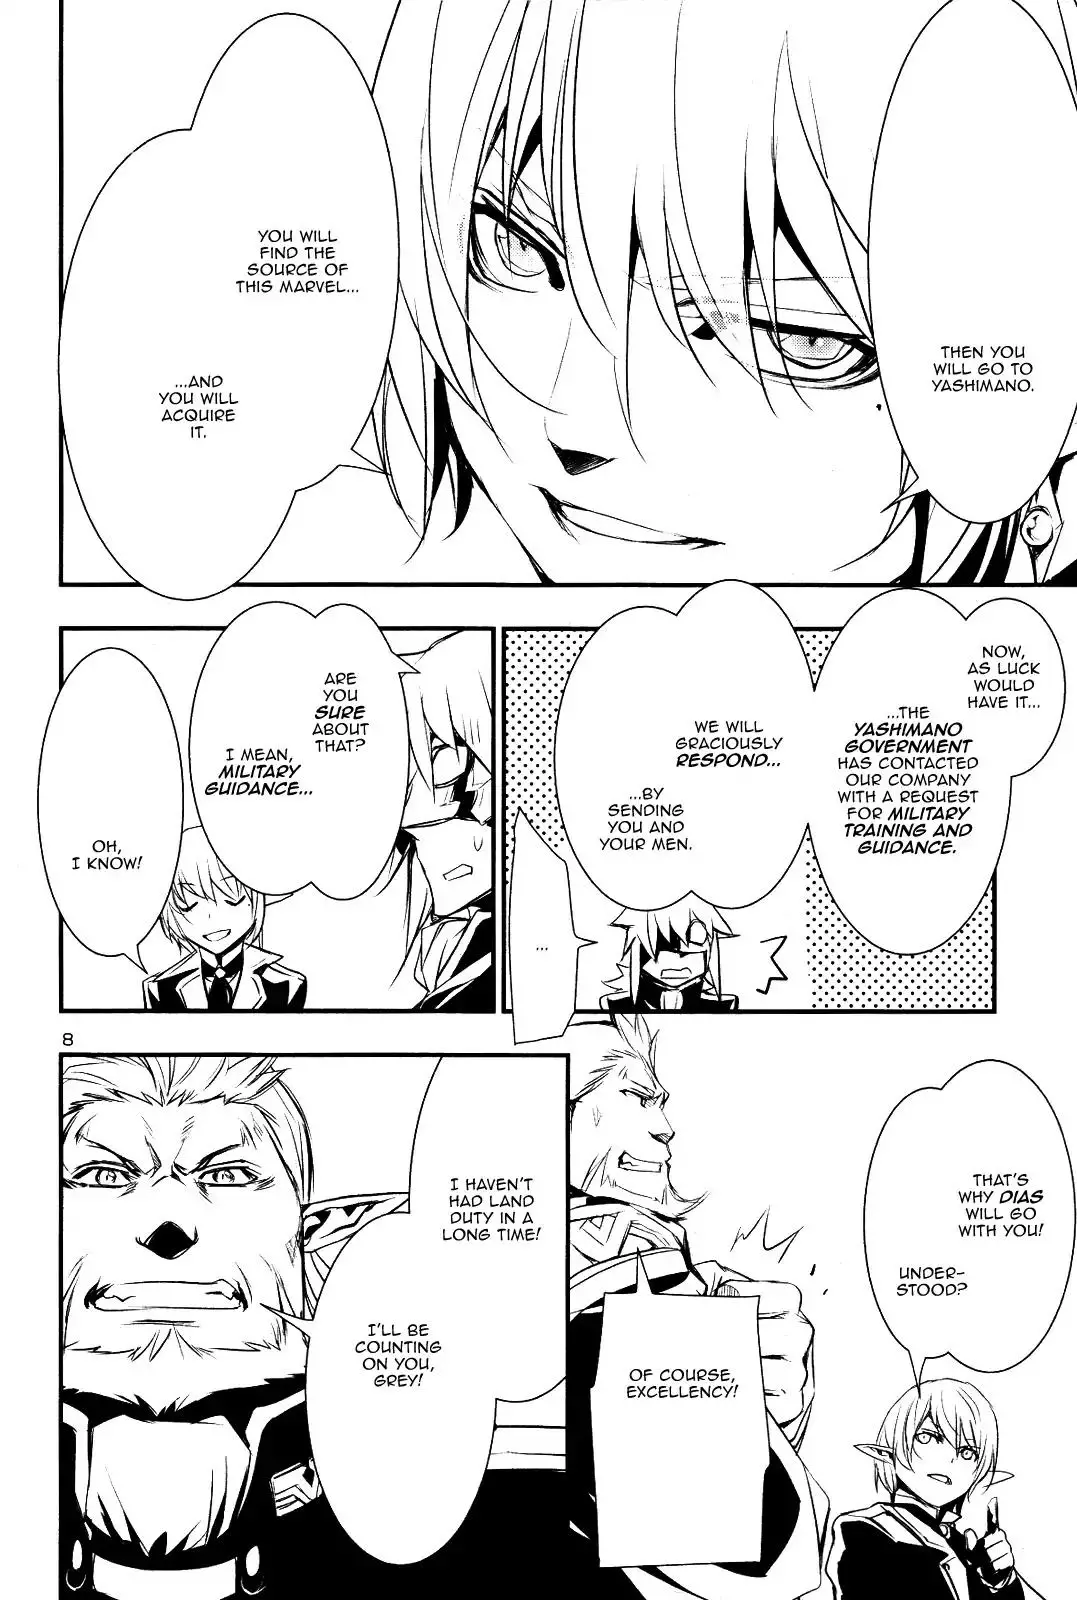 Shinju no Nectar - 22 page 6